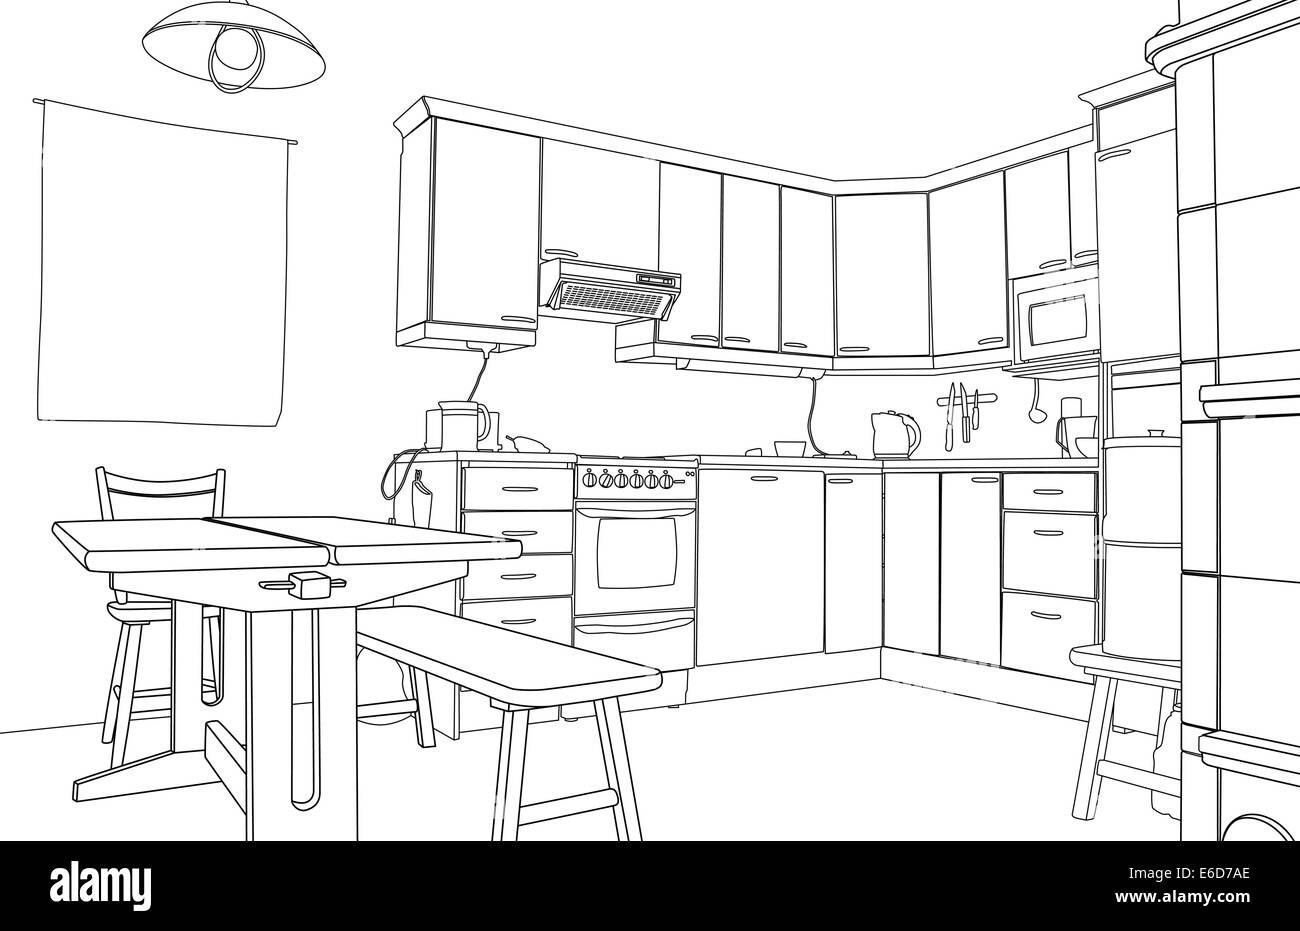 Bearbeitbares Vektor-Illustration eine Grundrissskizze eine Küche Interieur Stock Vektor